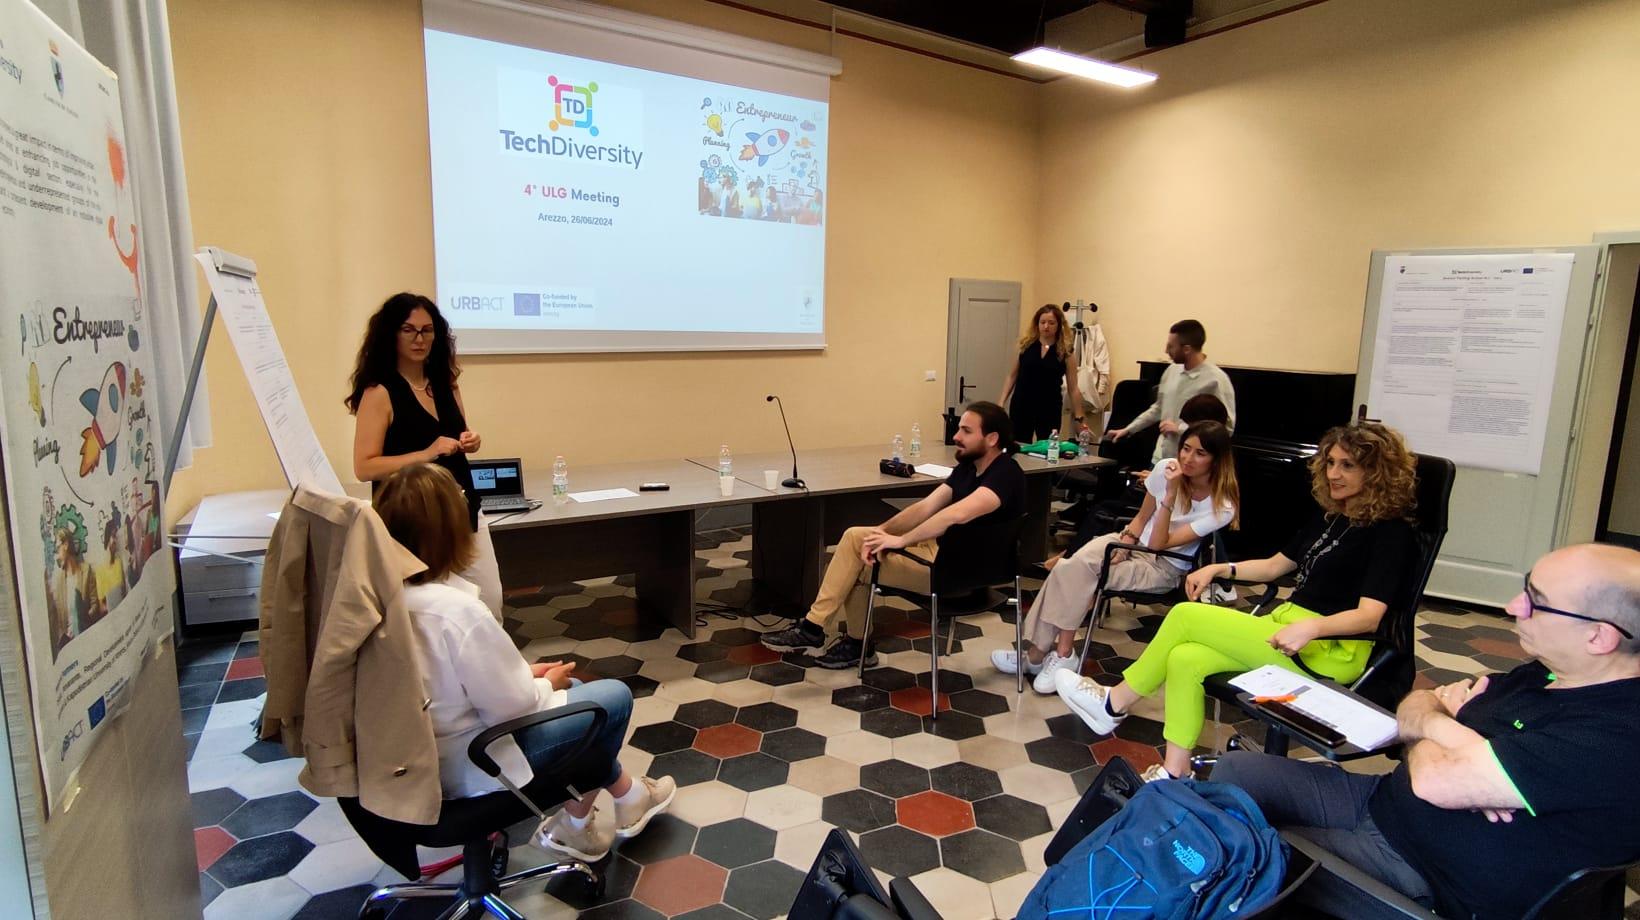 Progetto Tech Diversity: il quarto incontro gruppo locale Urbact di Arezzo